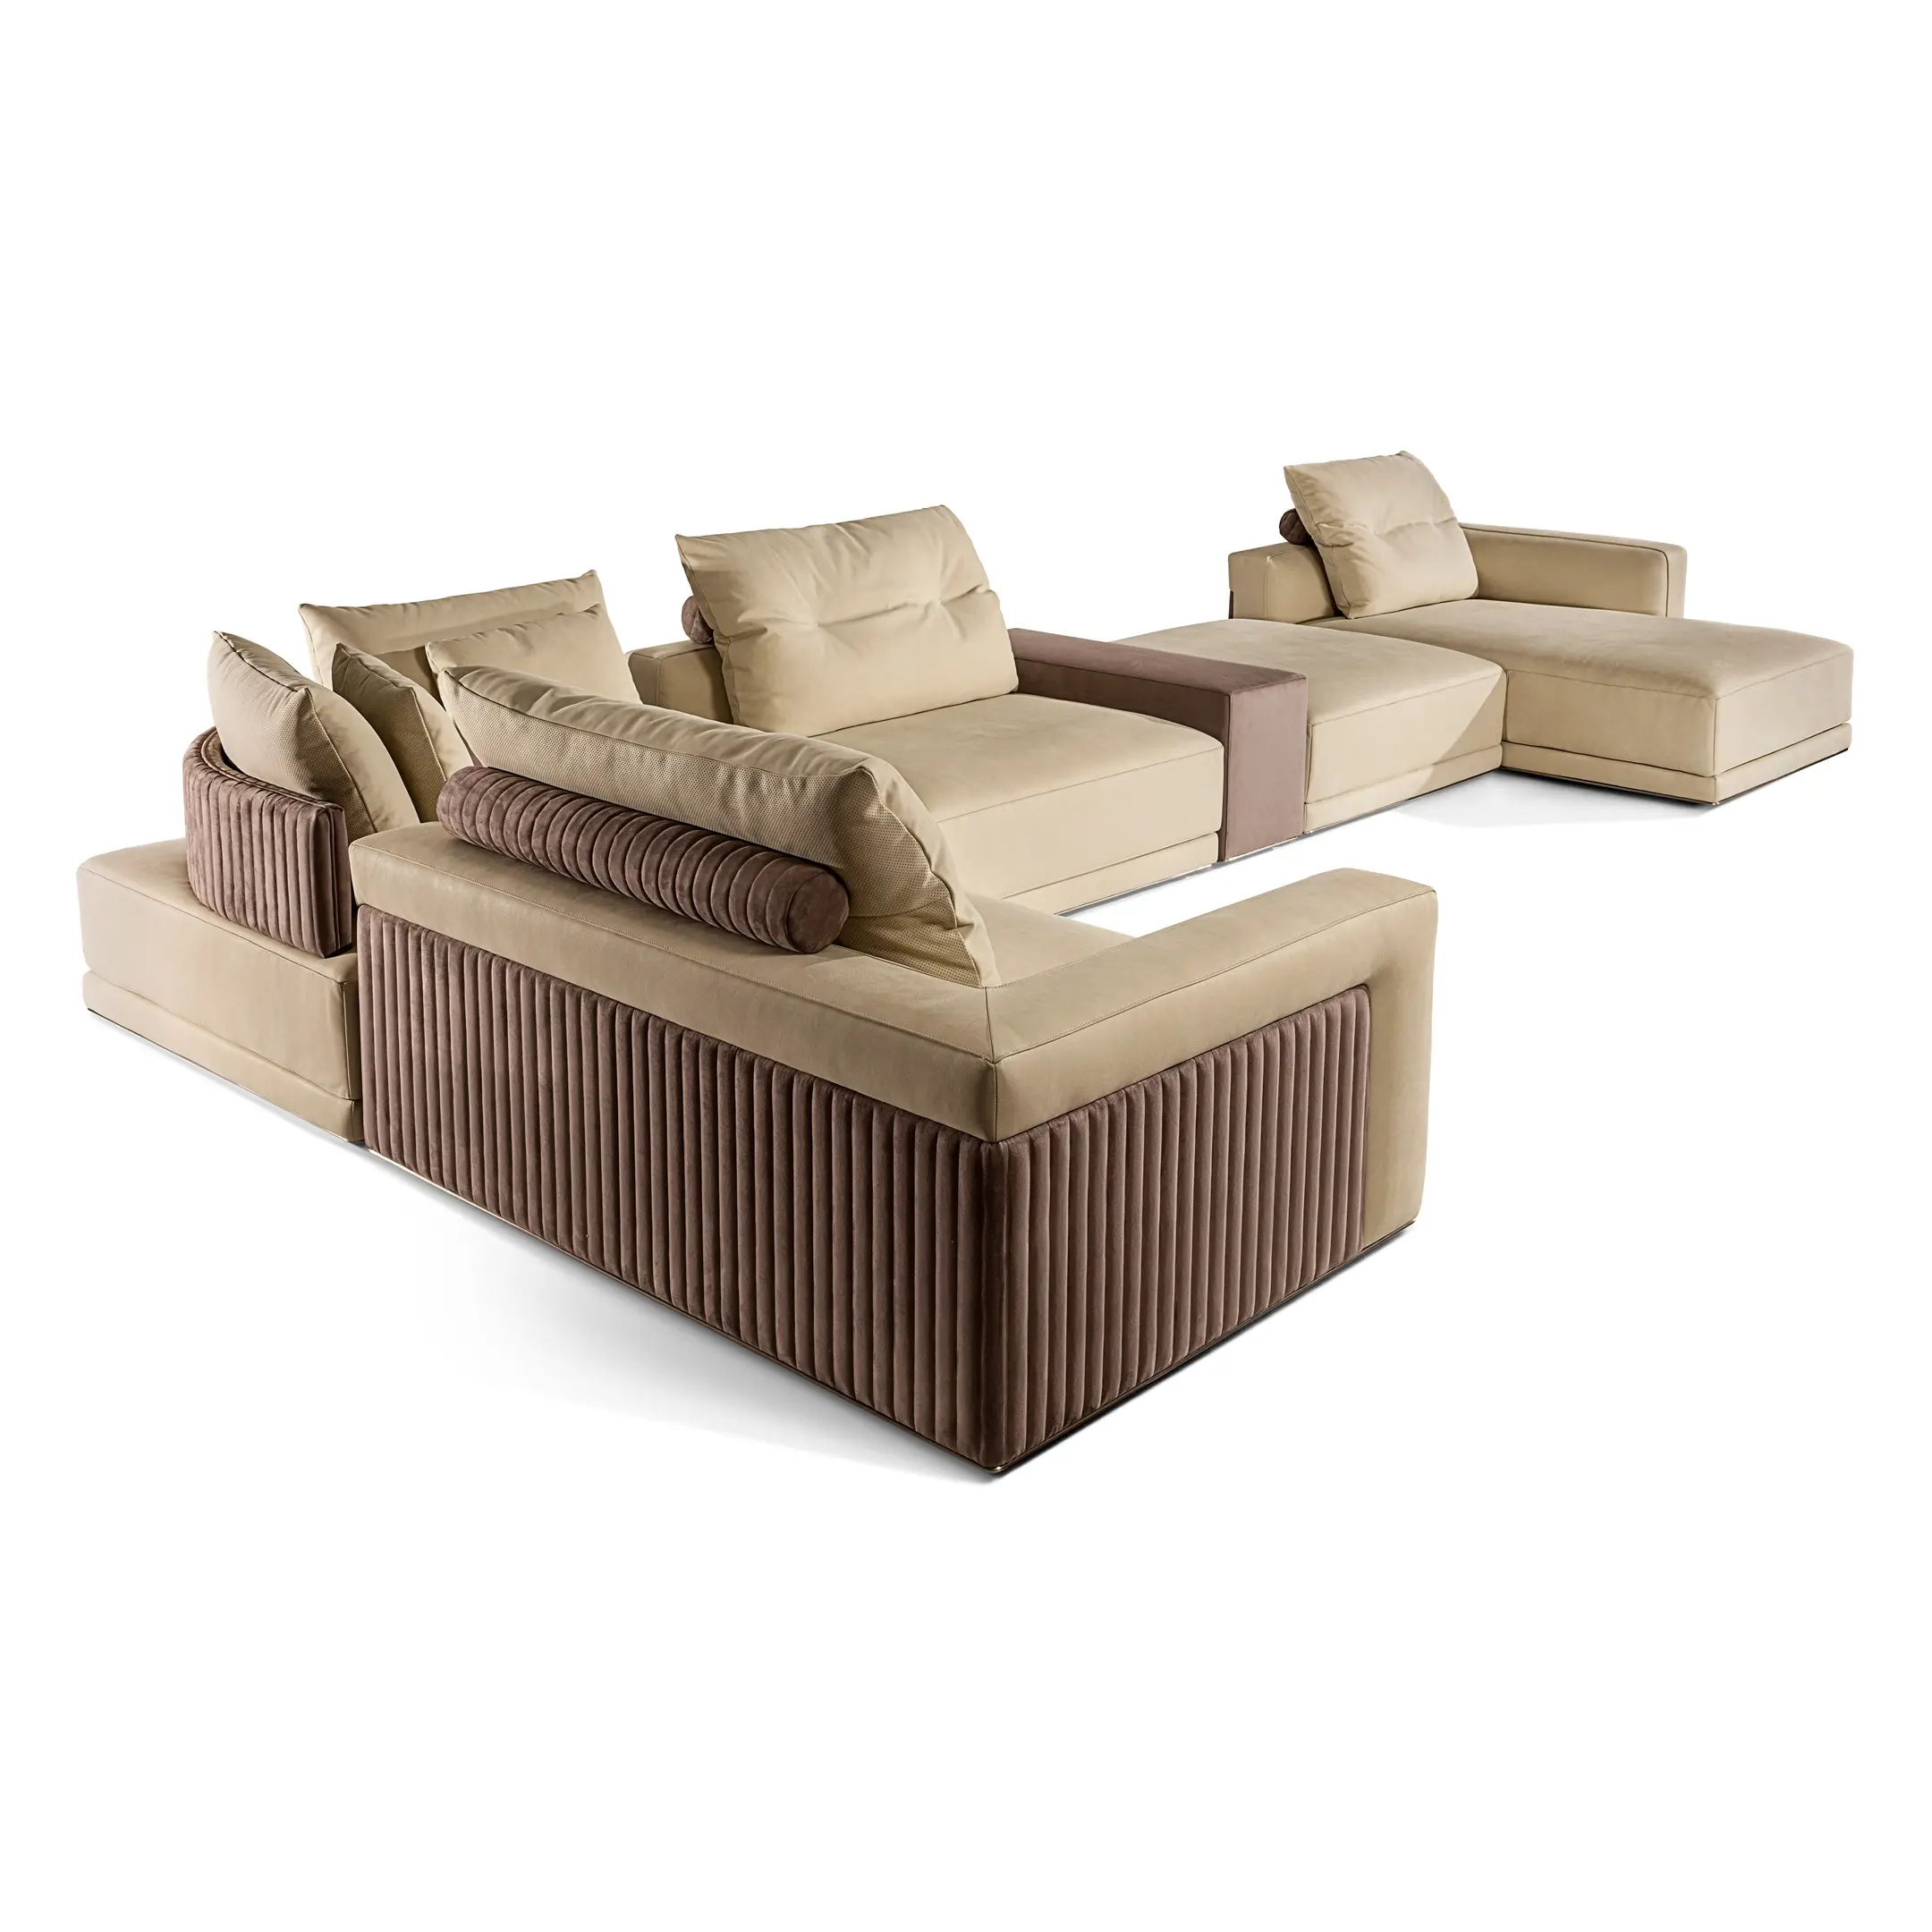 럭셔리의 전형: 곡선 나무 조개가 있는 수제 패딩 의자, 화려한 가죽/패브릭 장식품 및 강철 다리 세트